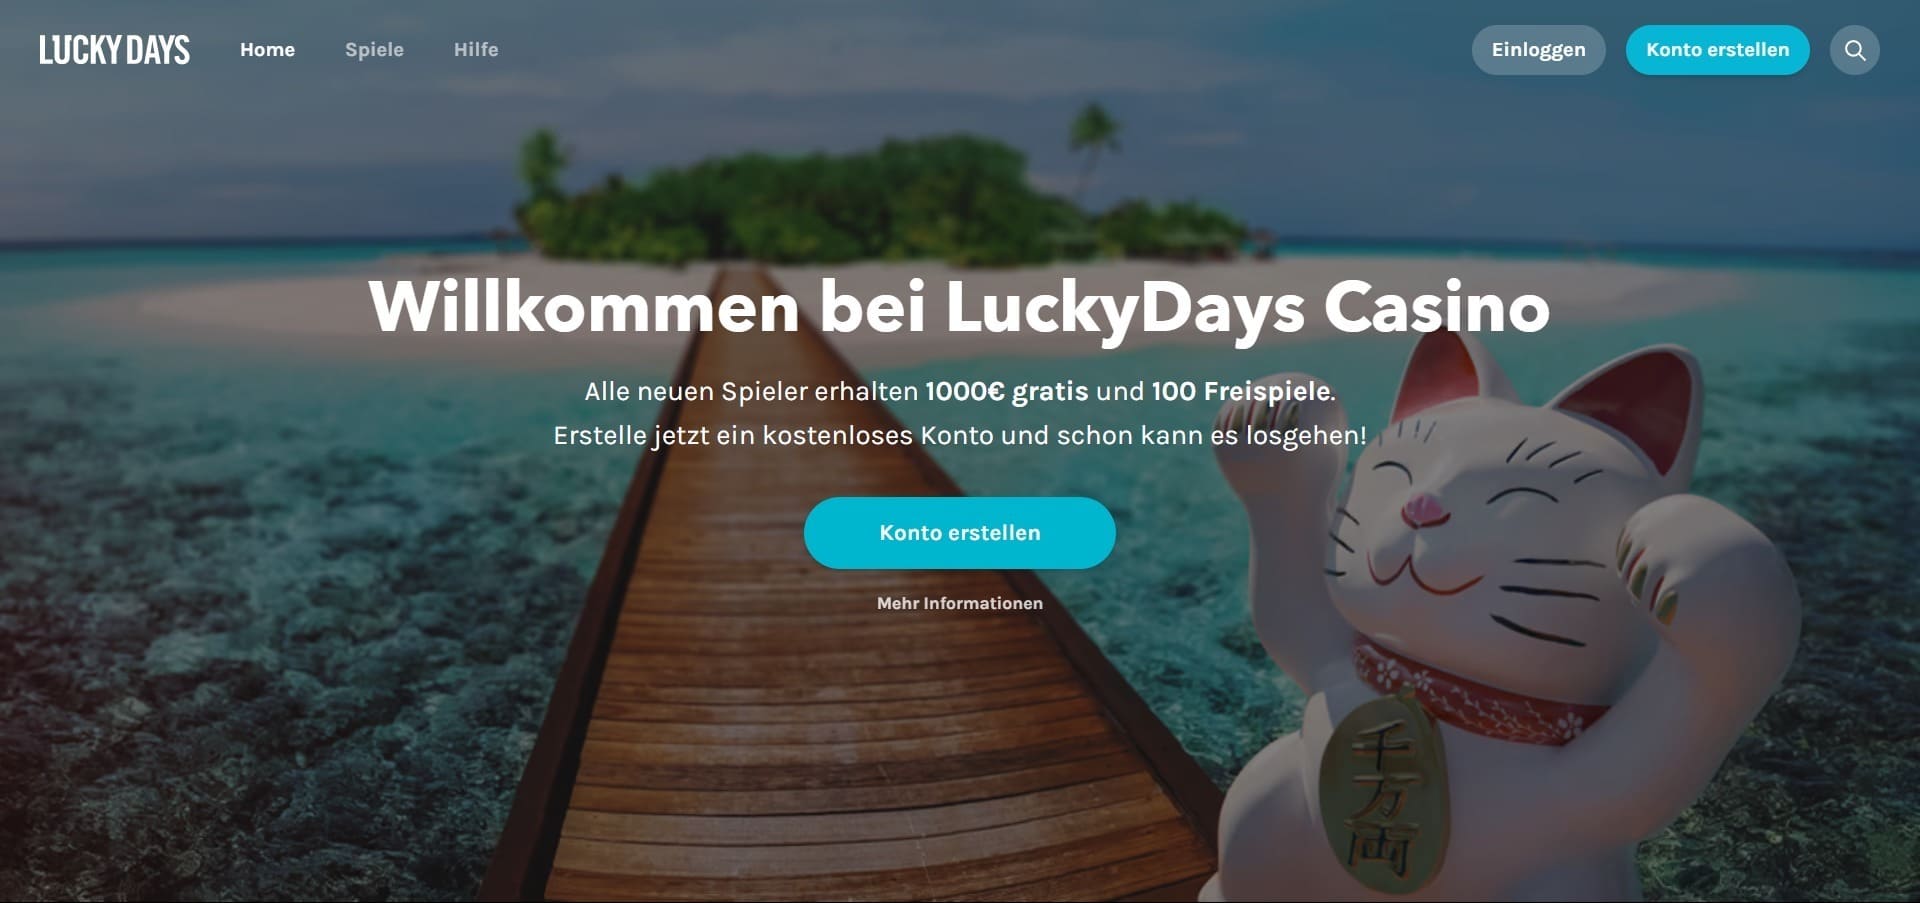 Offizielle Website der Lucky Days Casino